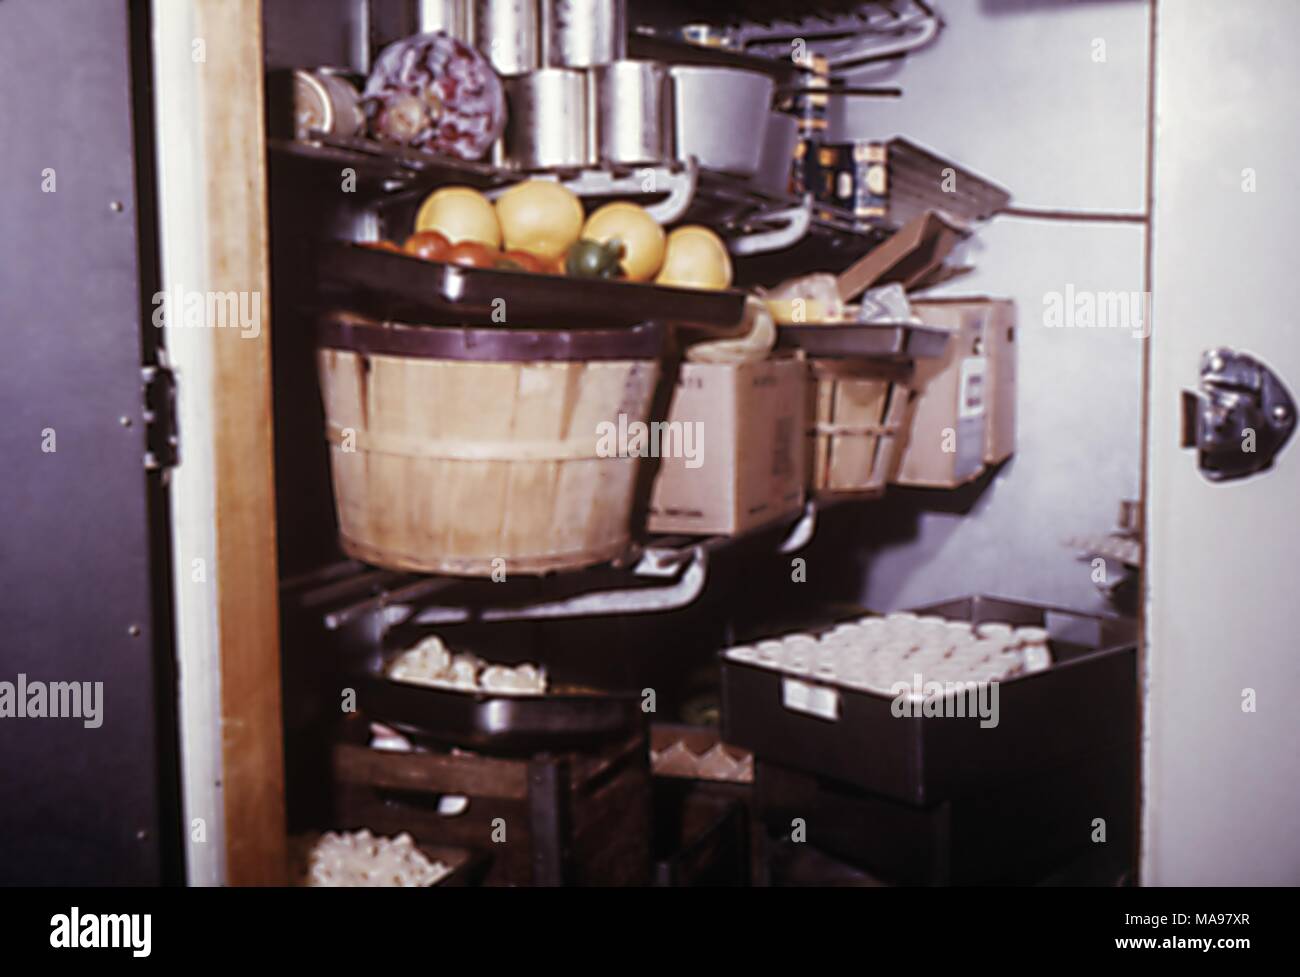 Photographie d'une unité de stockage réfrigéré dans une cuisine à un camp de travail des travailleurs migrants, 1975. Image courtoisie CDC. () Banque D'Images